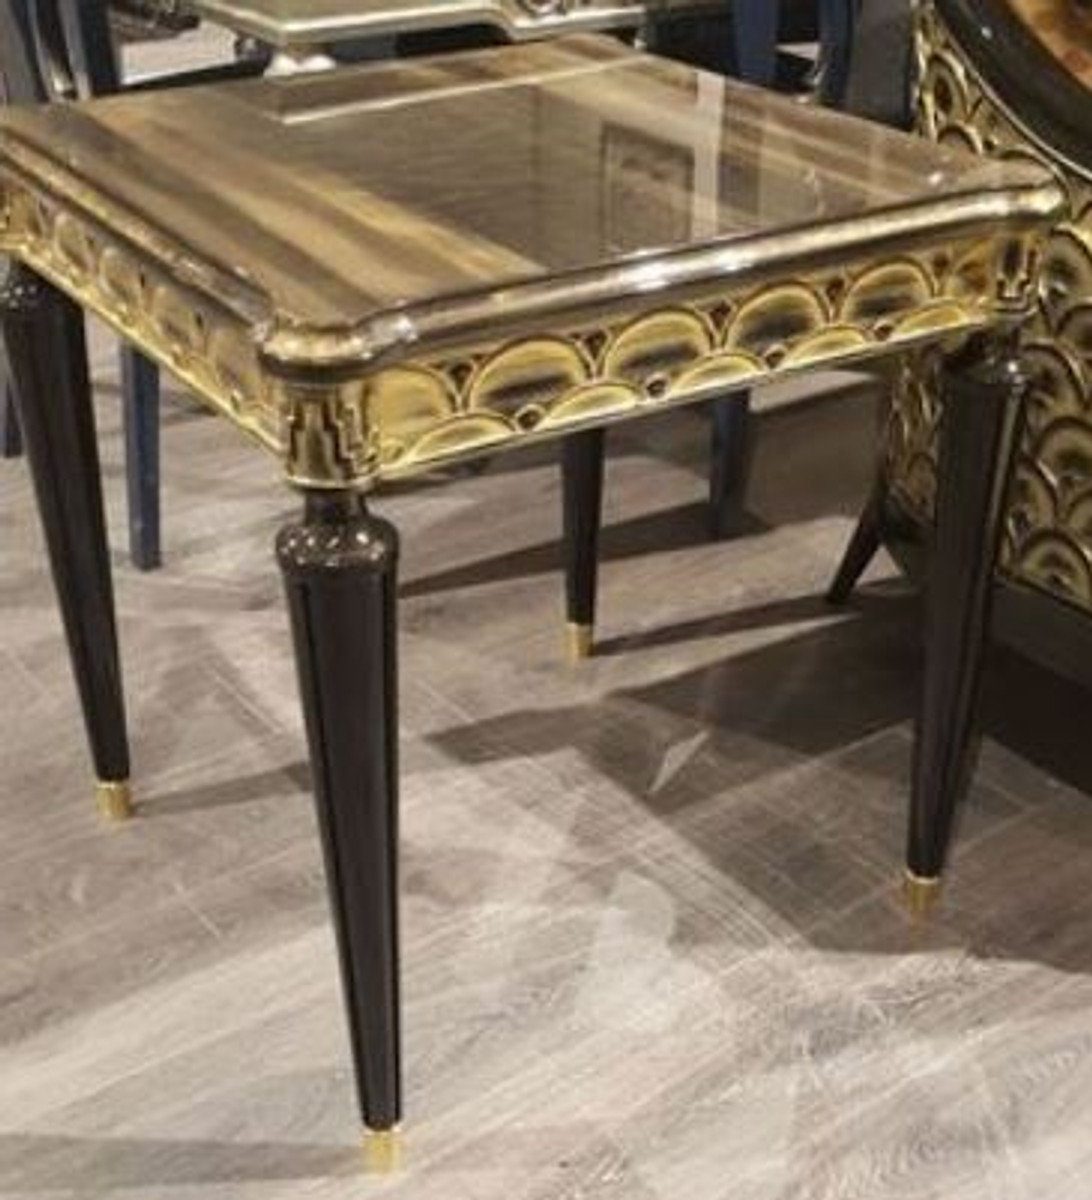 Casa Padrino Beistelltisch Luxus Barock Beistelltisch Schwarz / Gold 65 x 65 x H. 60 cm - Prunkvoller Massivholz Tisch - Luxus Qualität